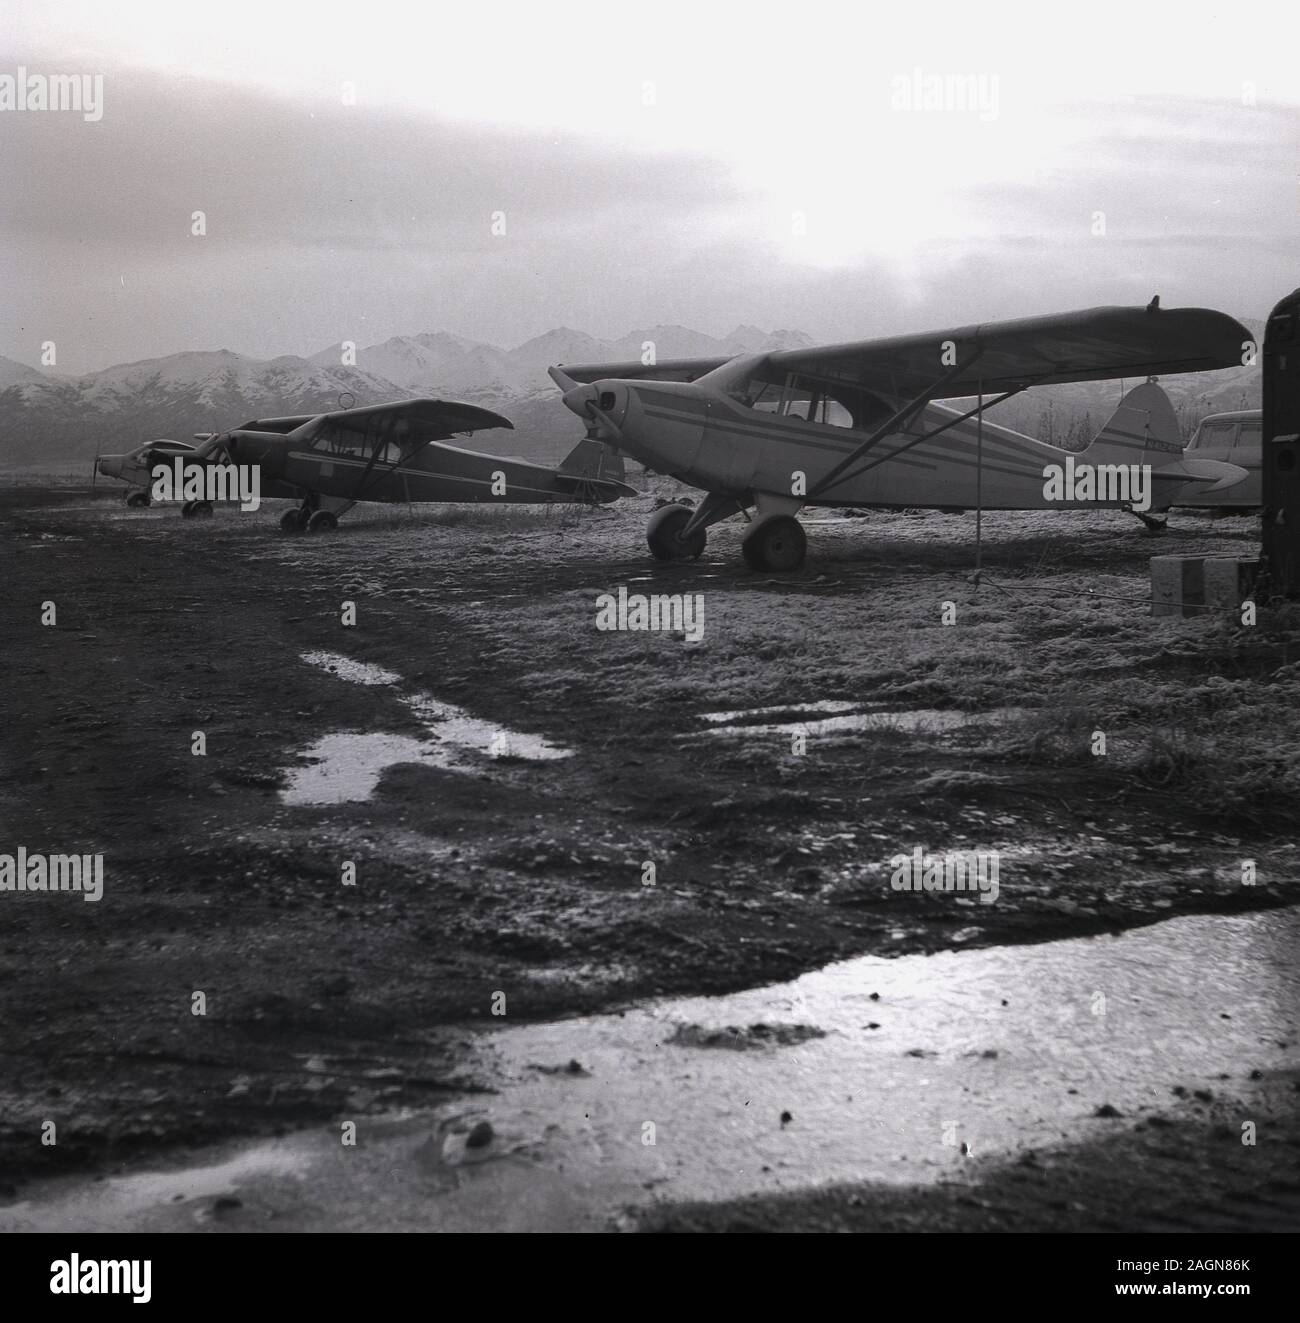 1960, historische, kleine 2-Sitzer flächenflugzeug Propeller- Flugzeugen sitzen auf unebenem Gelände in der Nähe von Flughafen Anchorage, Anchorage, Alaska, USA, mit der Chugach Mountains im Hintergrund. Stockfoto